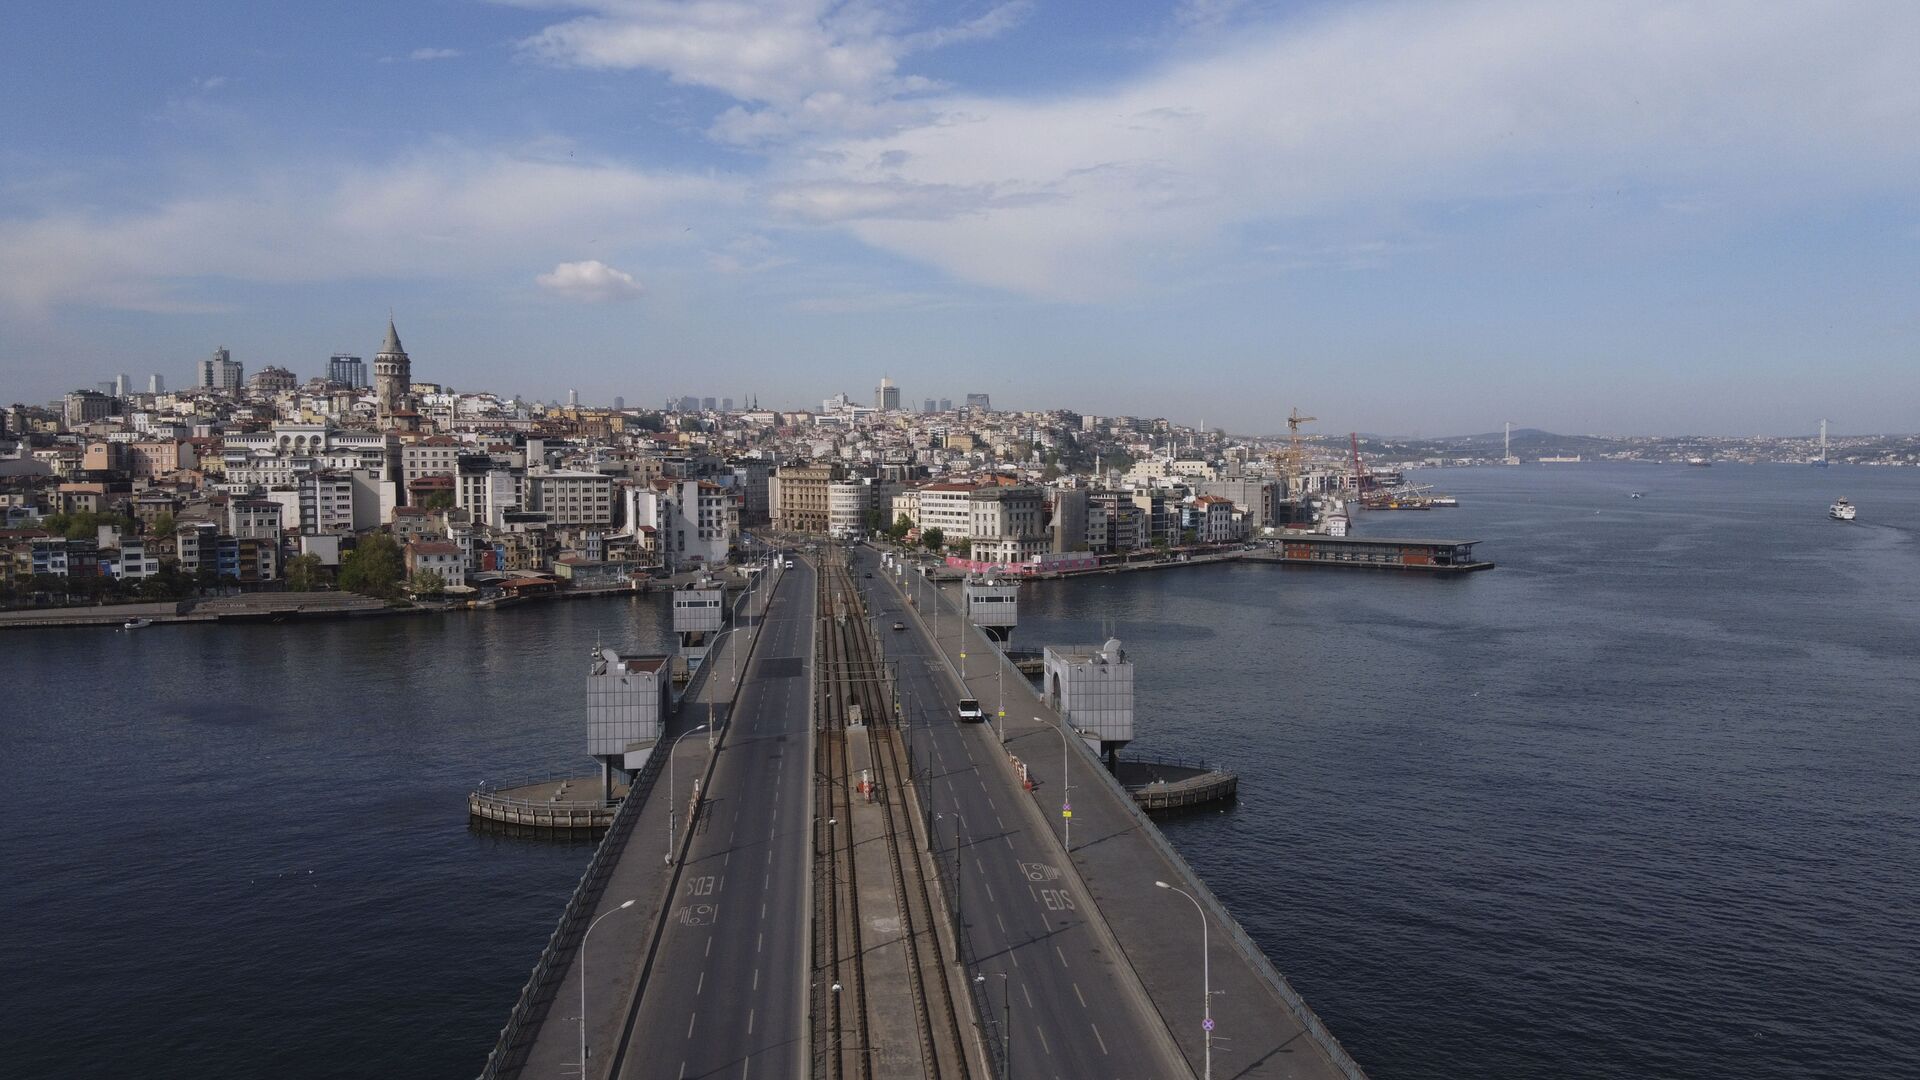 Вид на Галатский мост в Стамбуле, фото из архива - Sputnik Азербайджан, 1920, 09.08.2022